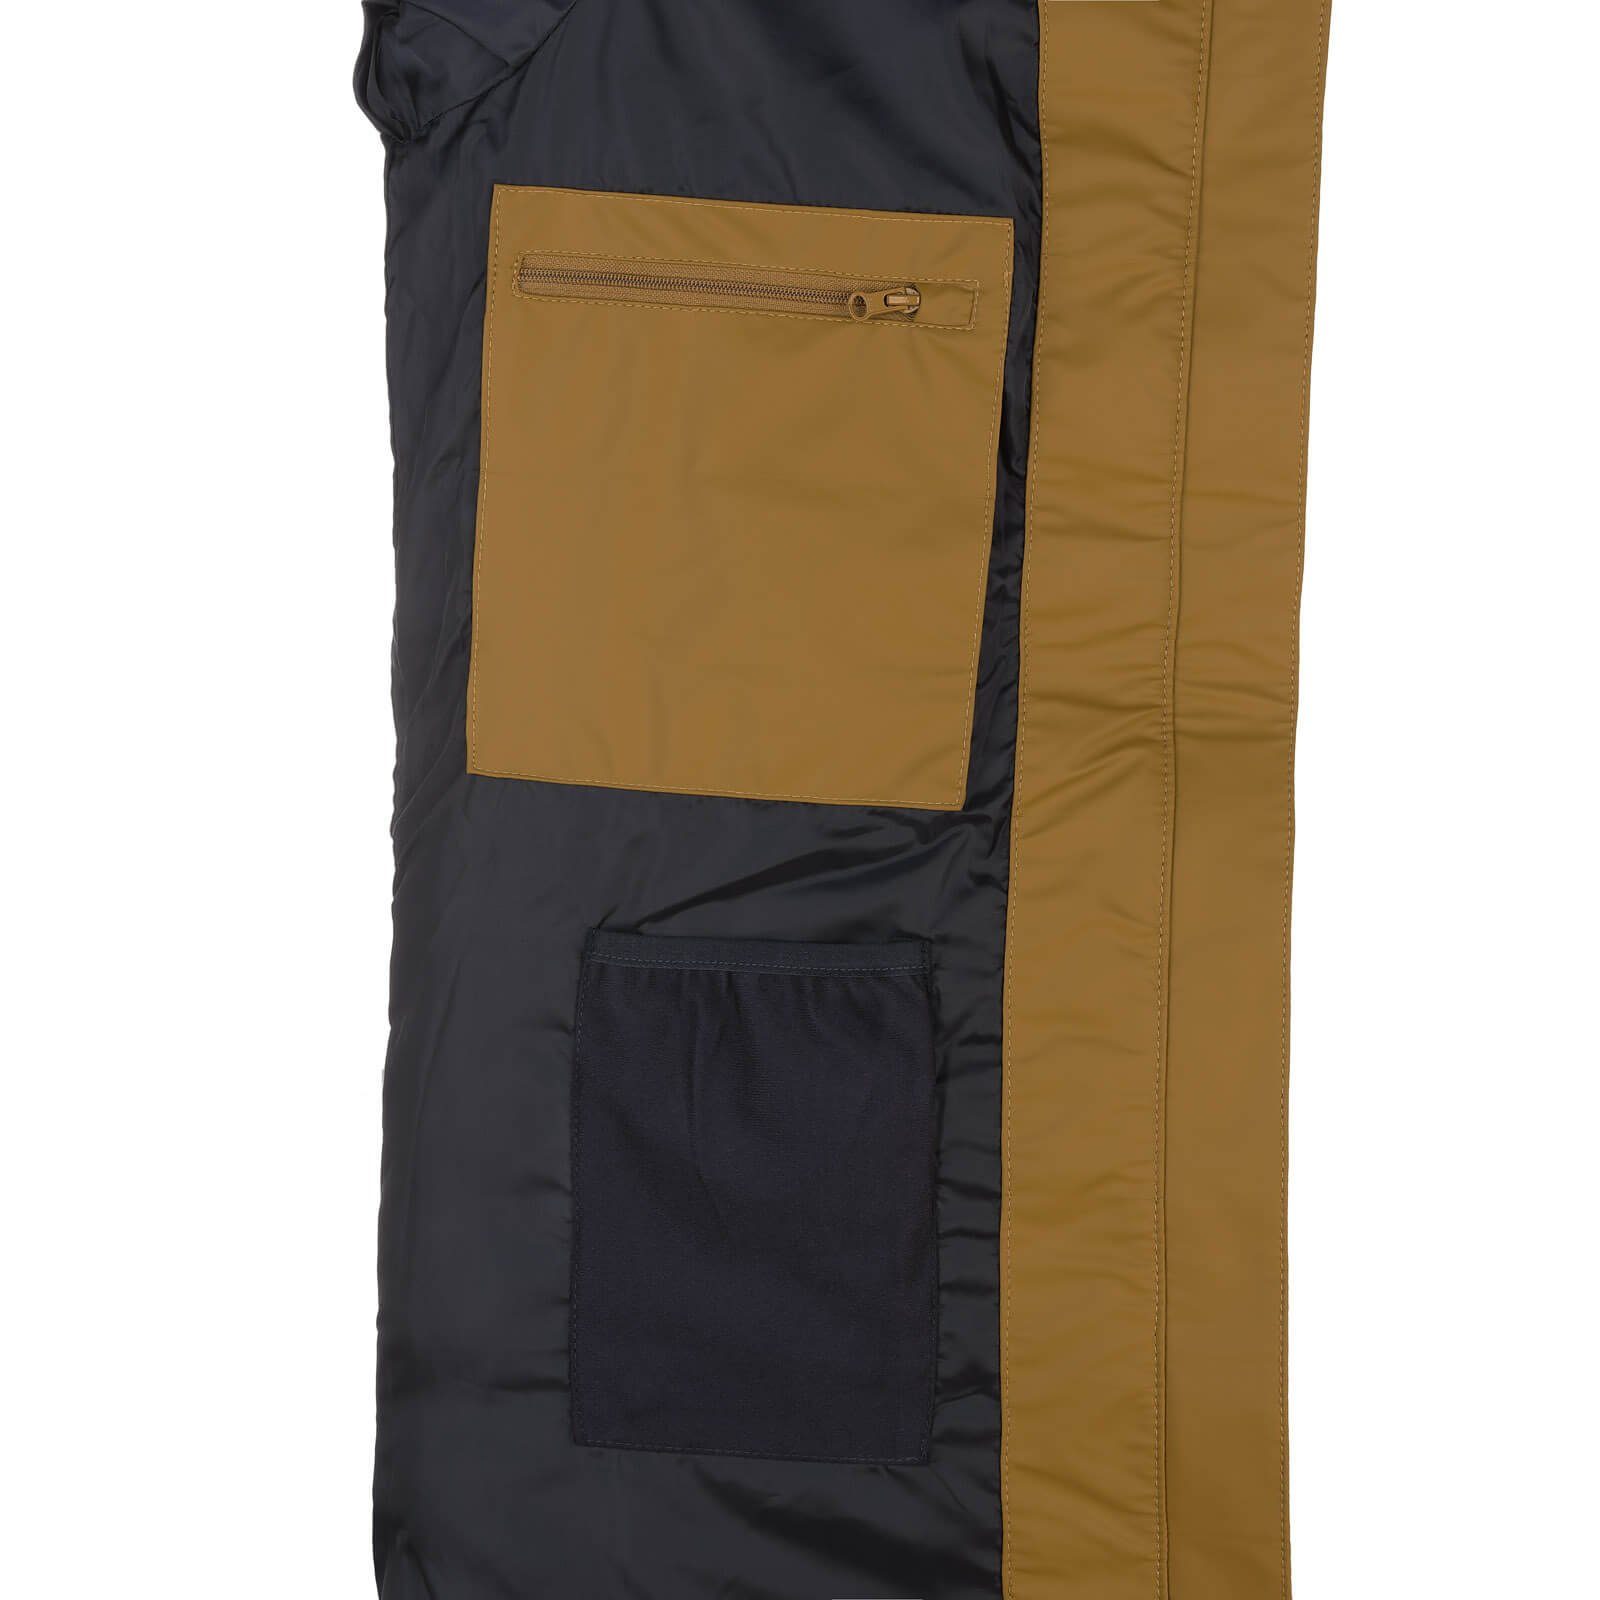 Regenmantel Damen Dry wasserdicht und gesteppt Outdoor-Jacke - Danzig zimt Fashion PU-Mantel wind-